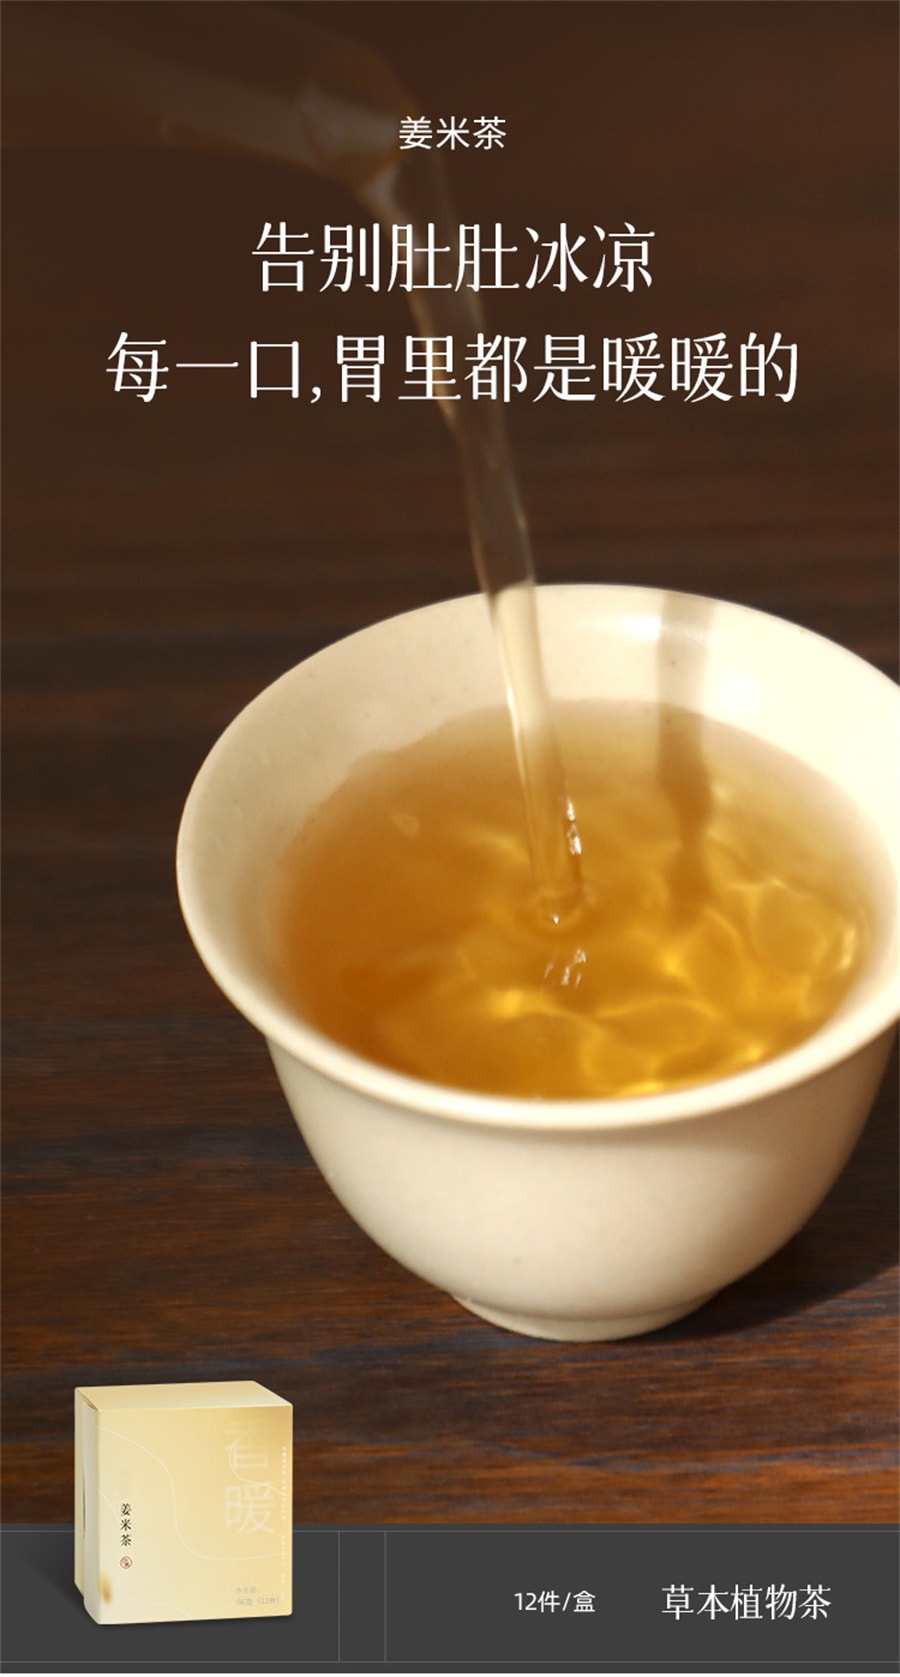 【中国直邮】少点盐   陈皮姜米茶-逐湿败寒-炒米茶新会陈皮干姜养生茶包泡水  96g/盒